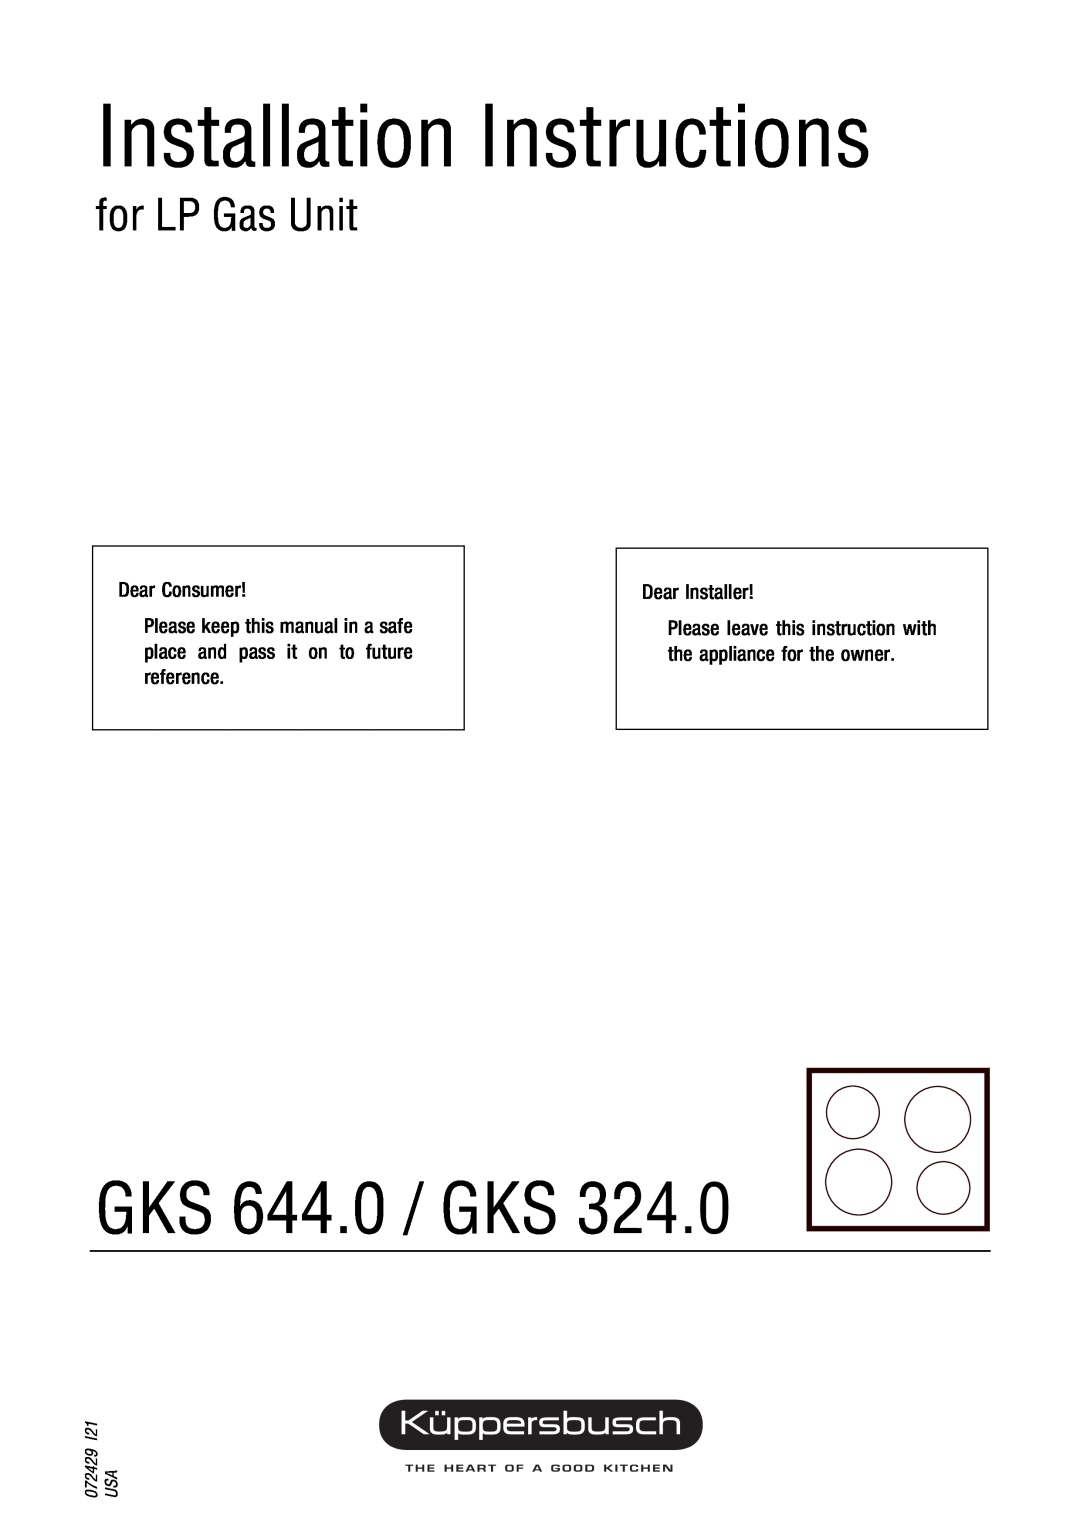 Kuppersbusch USA GKS 324.0 manual Dear Consumer, Dear Installer, User’s guide, GKS 644.0 / GKS, 072427 I21 USA 